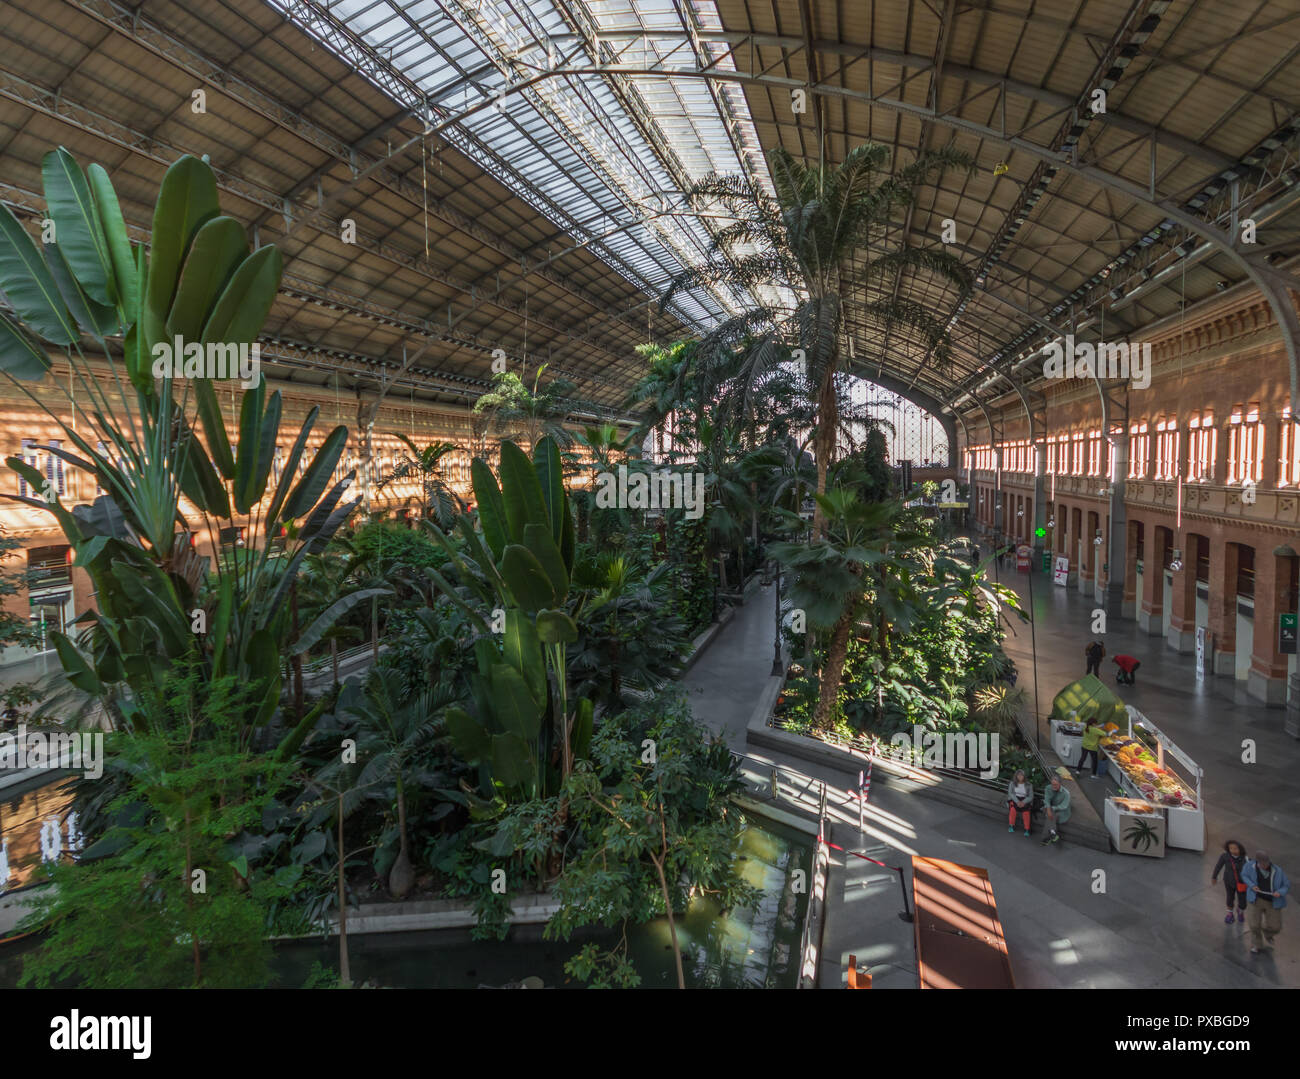 2004 dévastée par les bombardements, la gare d'Atocha, à Madrid, est aujourd'hui connue pour son jardin tropical intérieur Banque D'Images